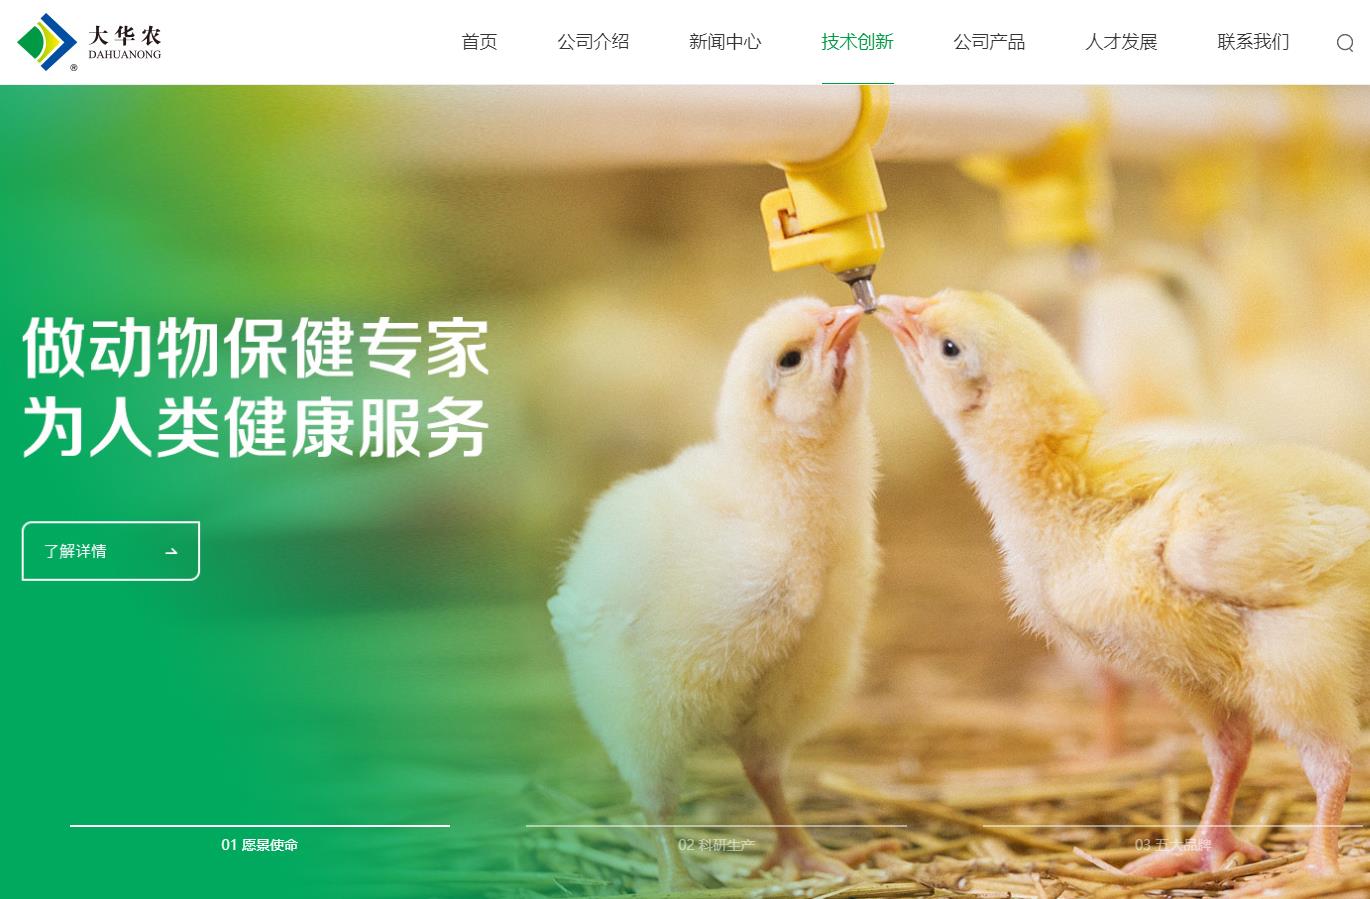 广东温氏大华农生物科技有限公司新成工业园中兽药和饲料添加剂综合项目总投资 42400.0万元